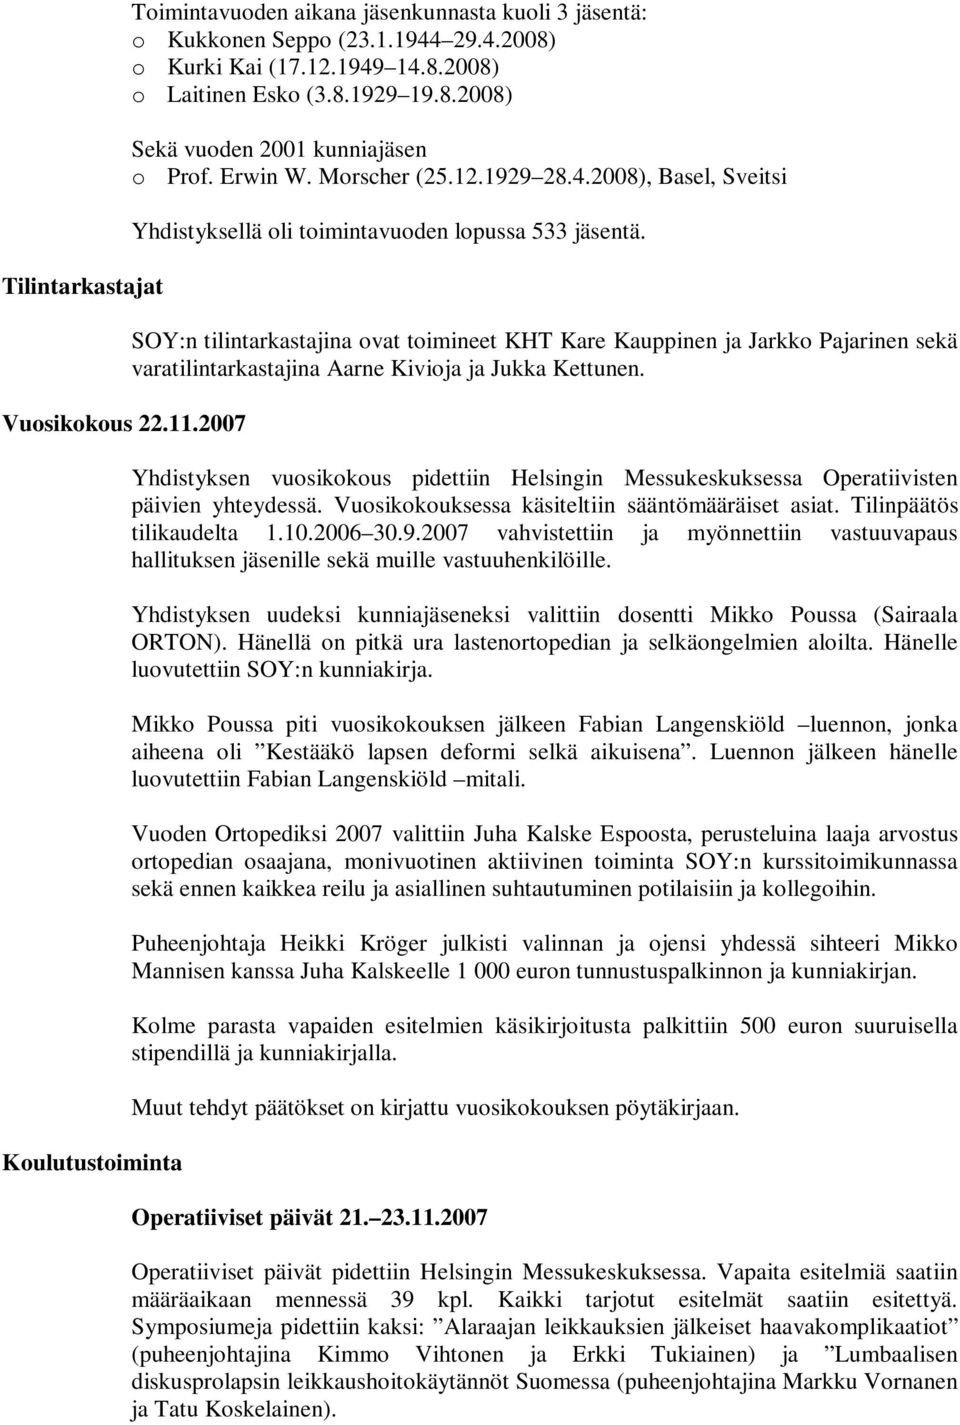 SOY:n tilintarkastajina ovat toimineet KHT Kare Kauppinen ja Jarkko Pajarinen sekä varatilintarkastajina Aarne Kivioja ja Jukka Kettunen.